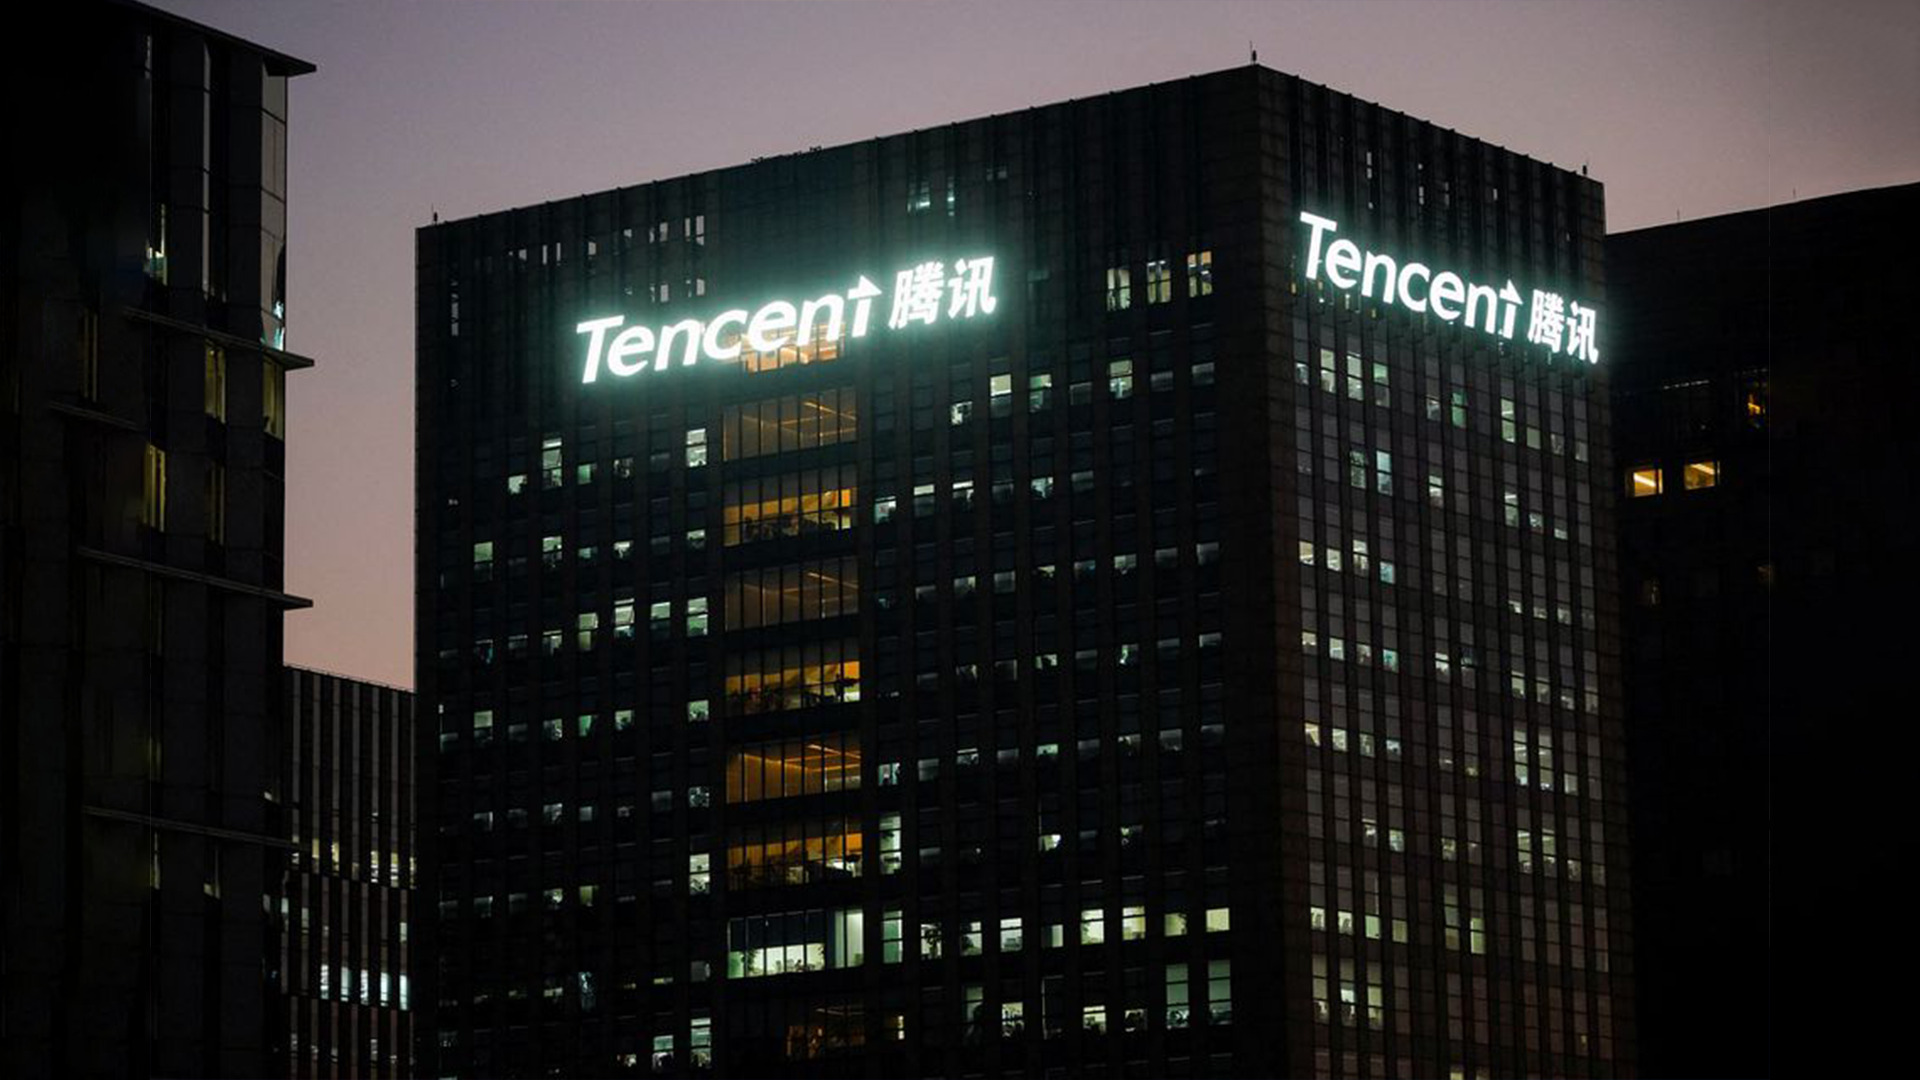 ถอยดีกว่า! Tencent ประกาศปิดตลาดซื้อขาย NFT หลังเปิดมาได้ 1 ปี